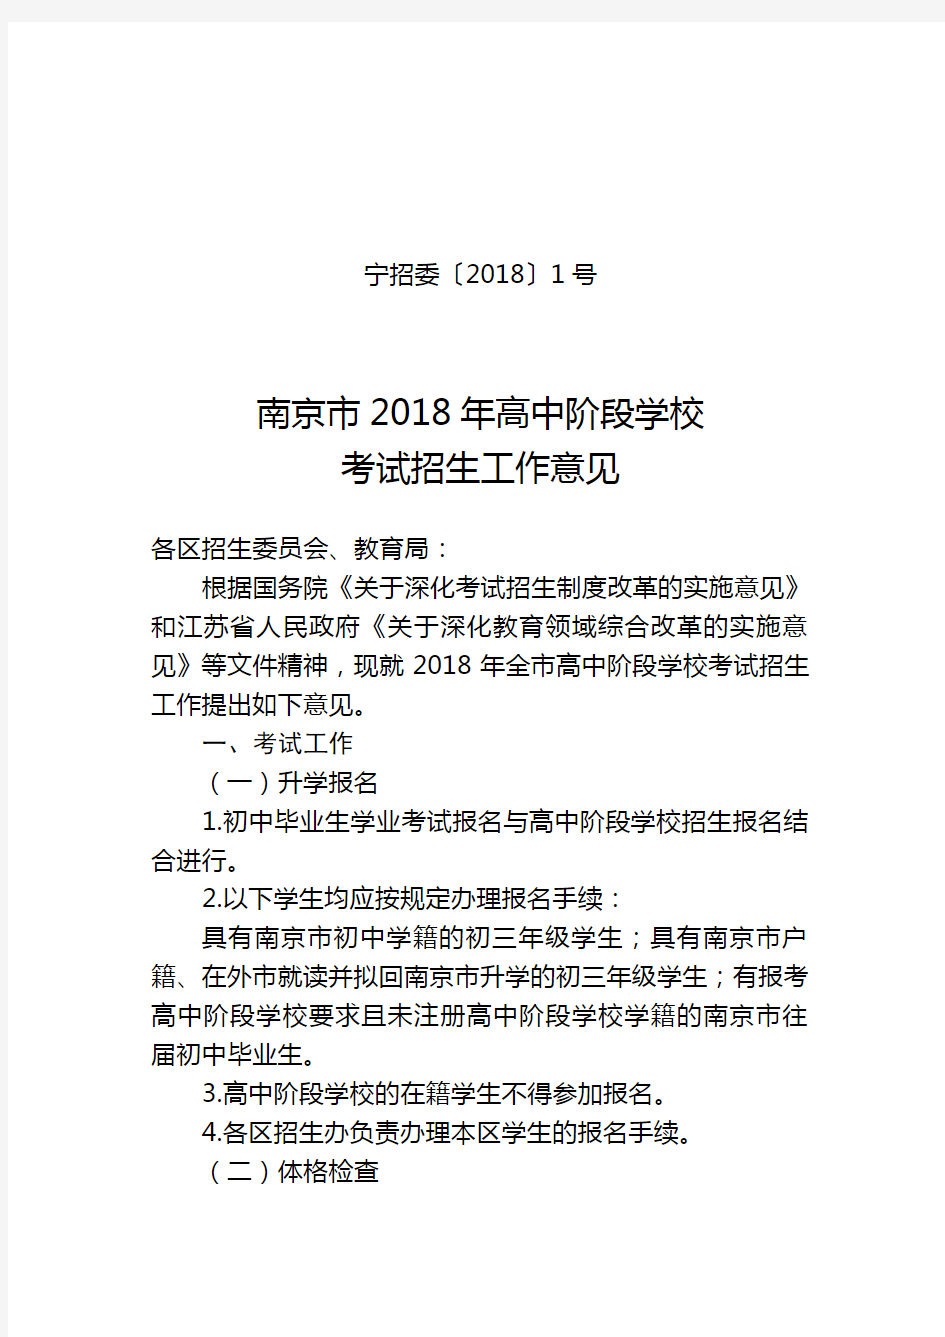 南京市2018年高中阶段学校考试招生工作意见